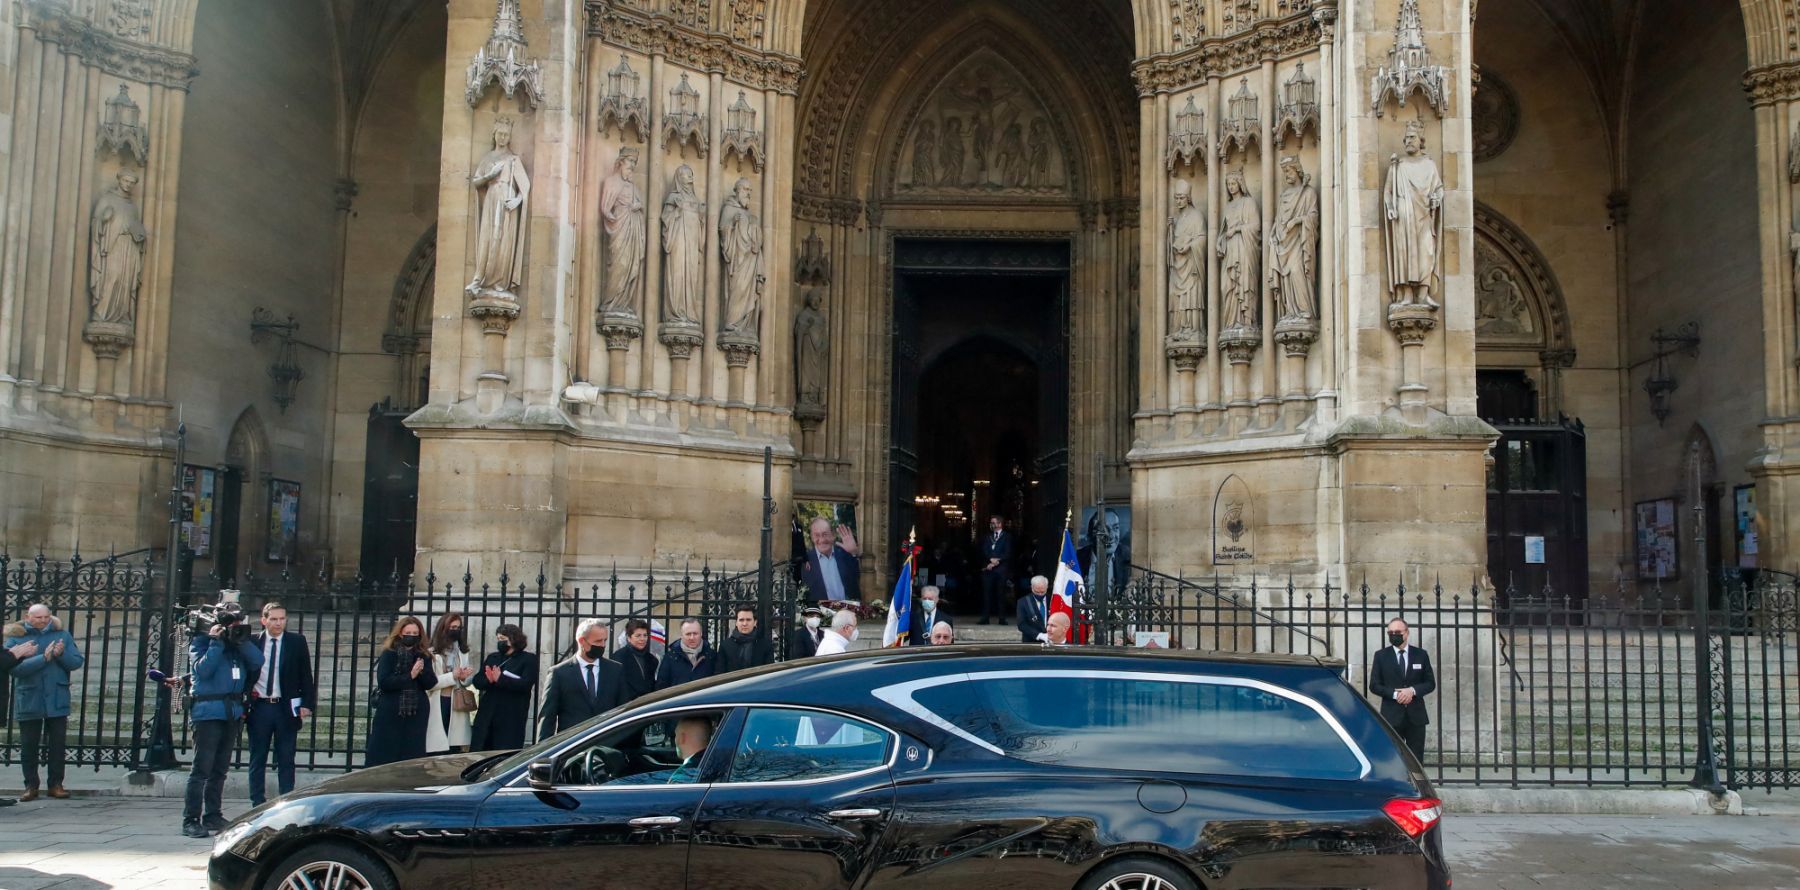 Obsèques de Jean-Pierre Pernaut : Ce corbillard grand luxe pas choisi